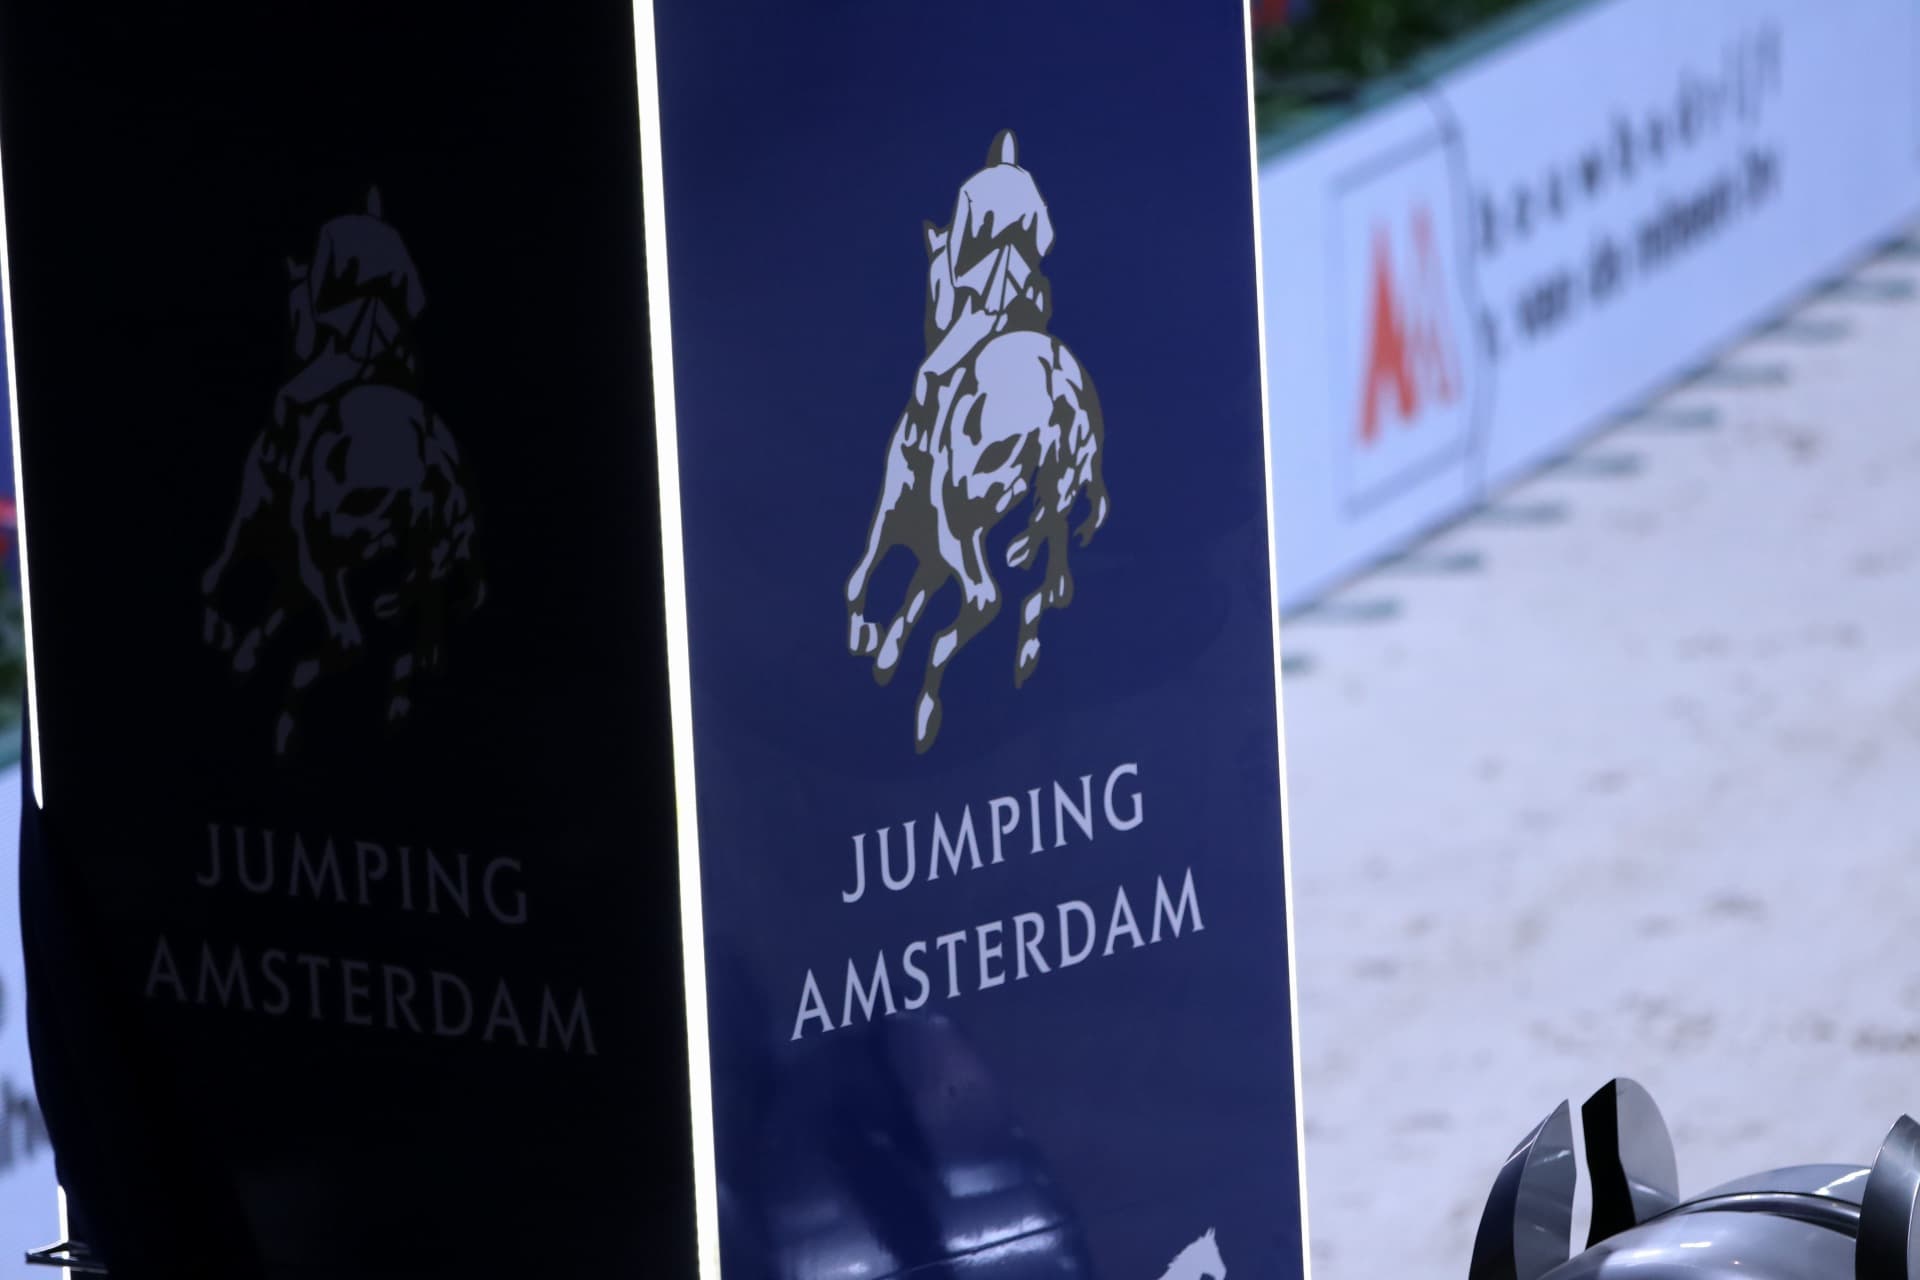 Jumping Amsterdam zet paardenwelzijn voorop